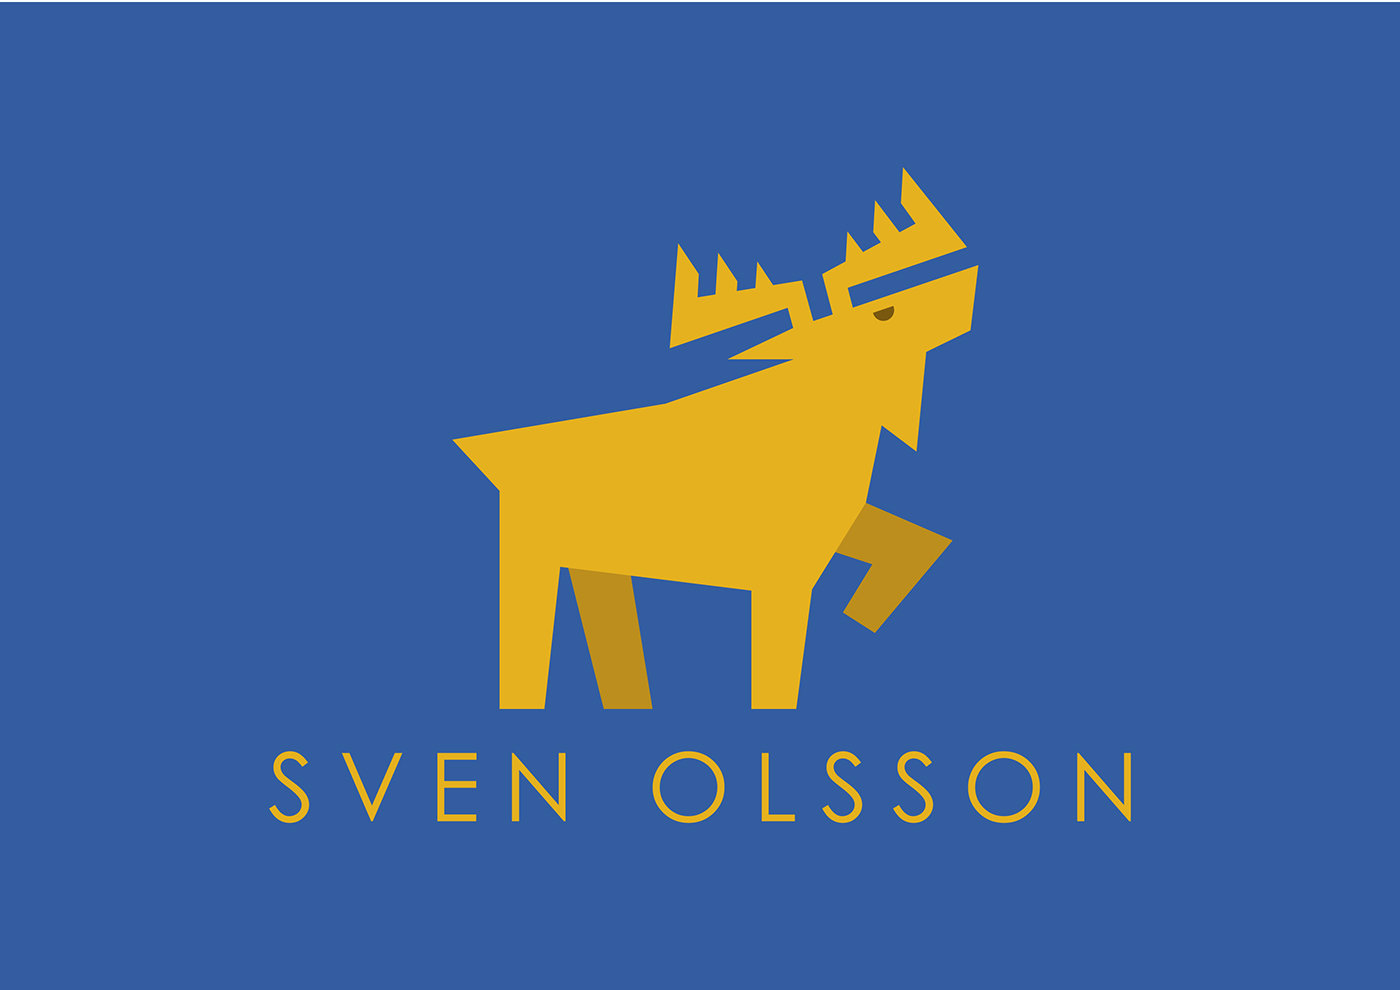 polo Swedish Sweden moose logo polo logo polo shirt logo animal logo